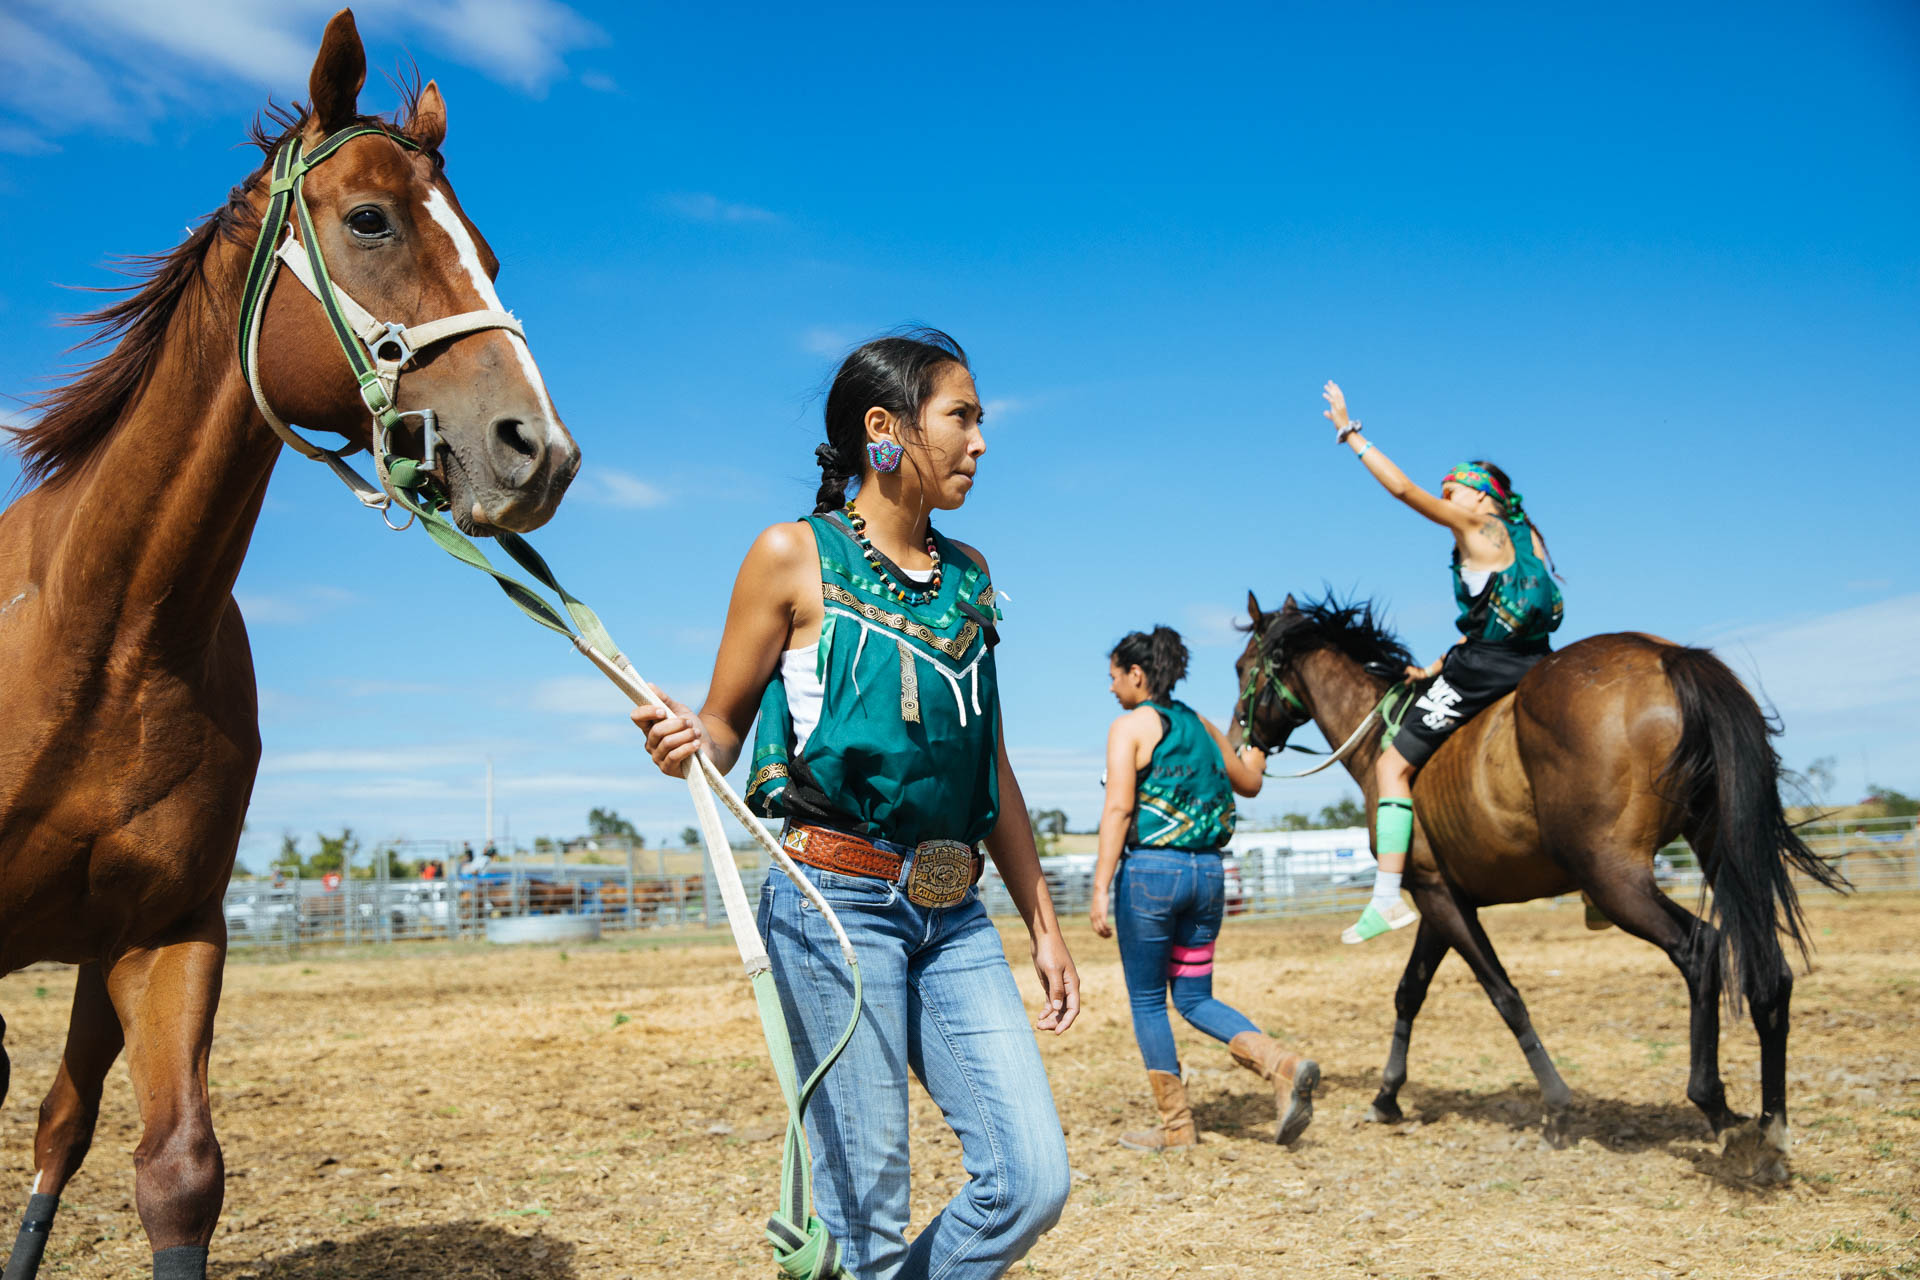 pine-ridge-reservation-oglala-lakota-girls-relay-horse-race-travis-dewitz-0122.JPG